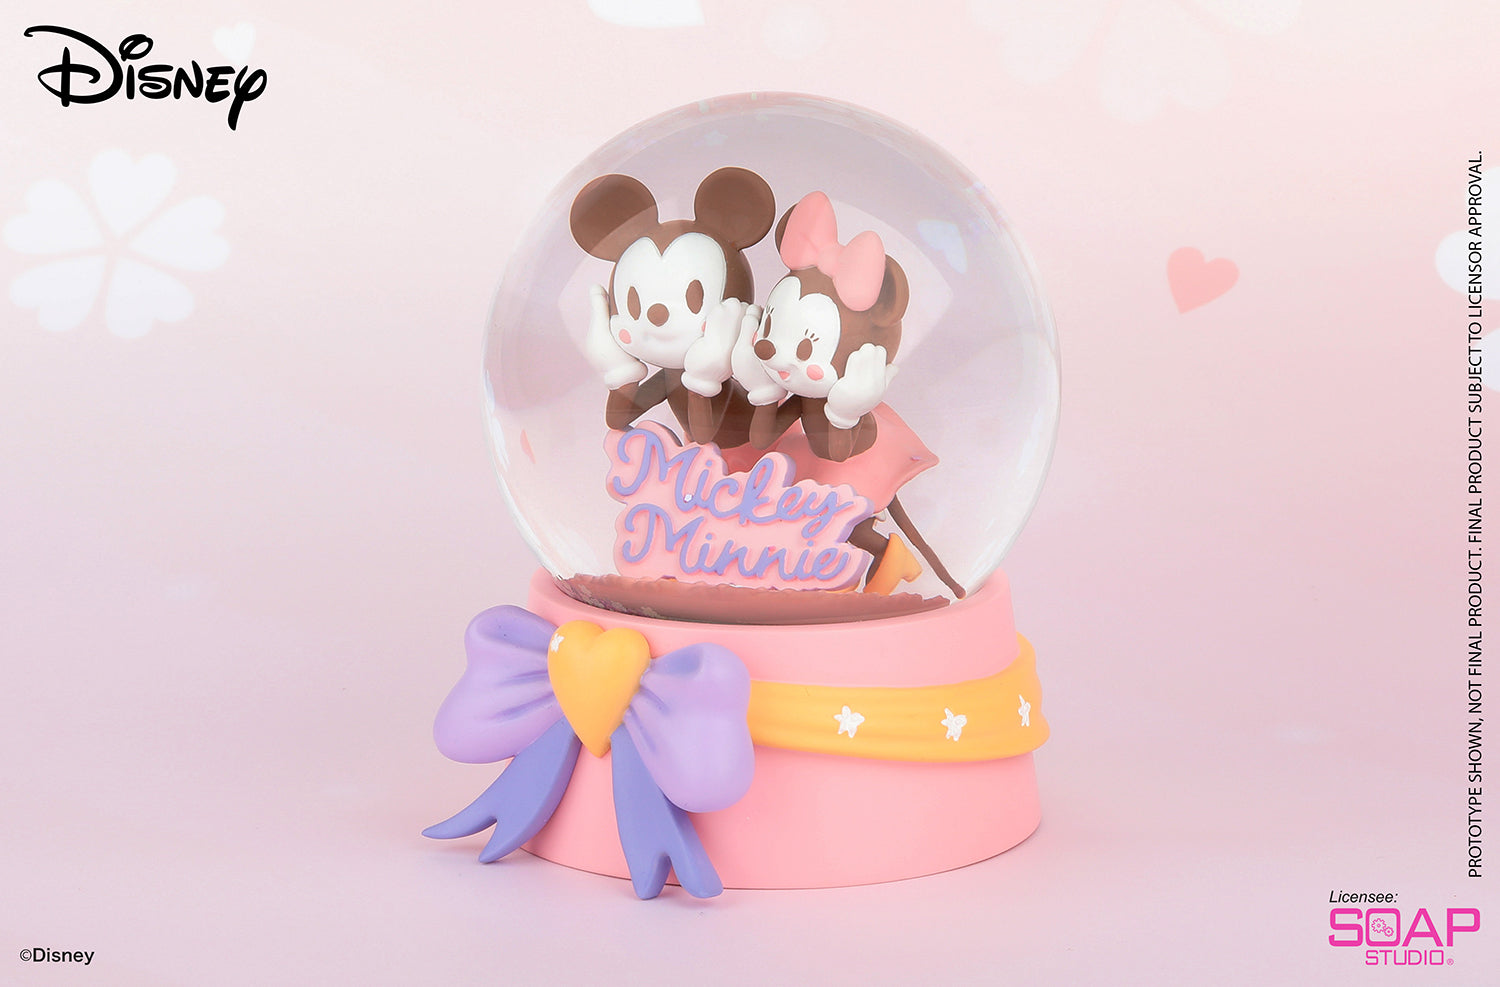 Soap Studio DY302 Disney Cherry Blossom - Mickey Minnie Snow Globe